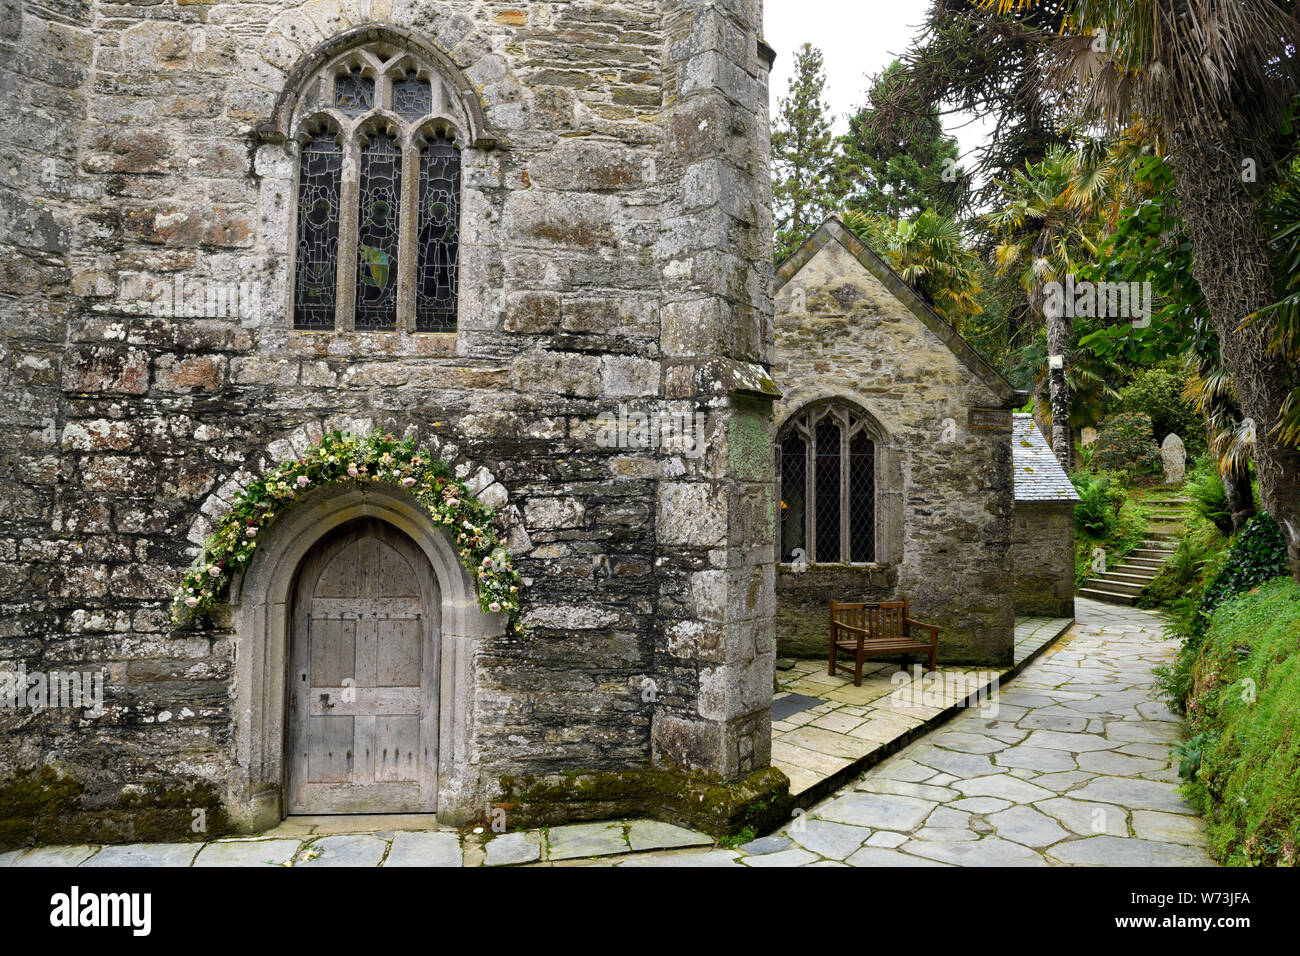 St anglicana appena la chiesa con fiori su porta circondata da palme in San Giusto in Roseland Cornwall Inghilterra con scale per la collina cemet Foto Stock